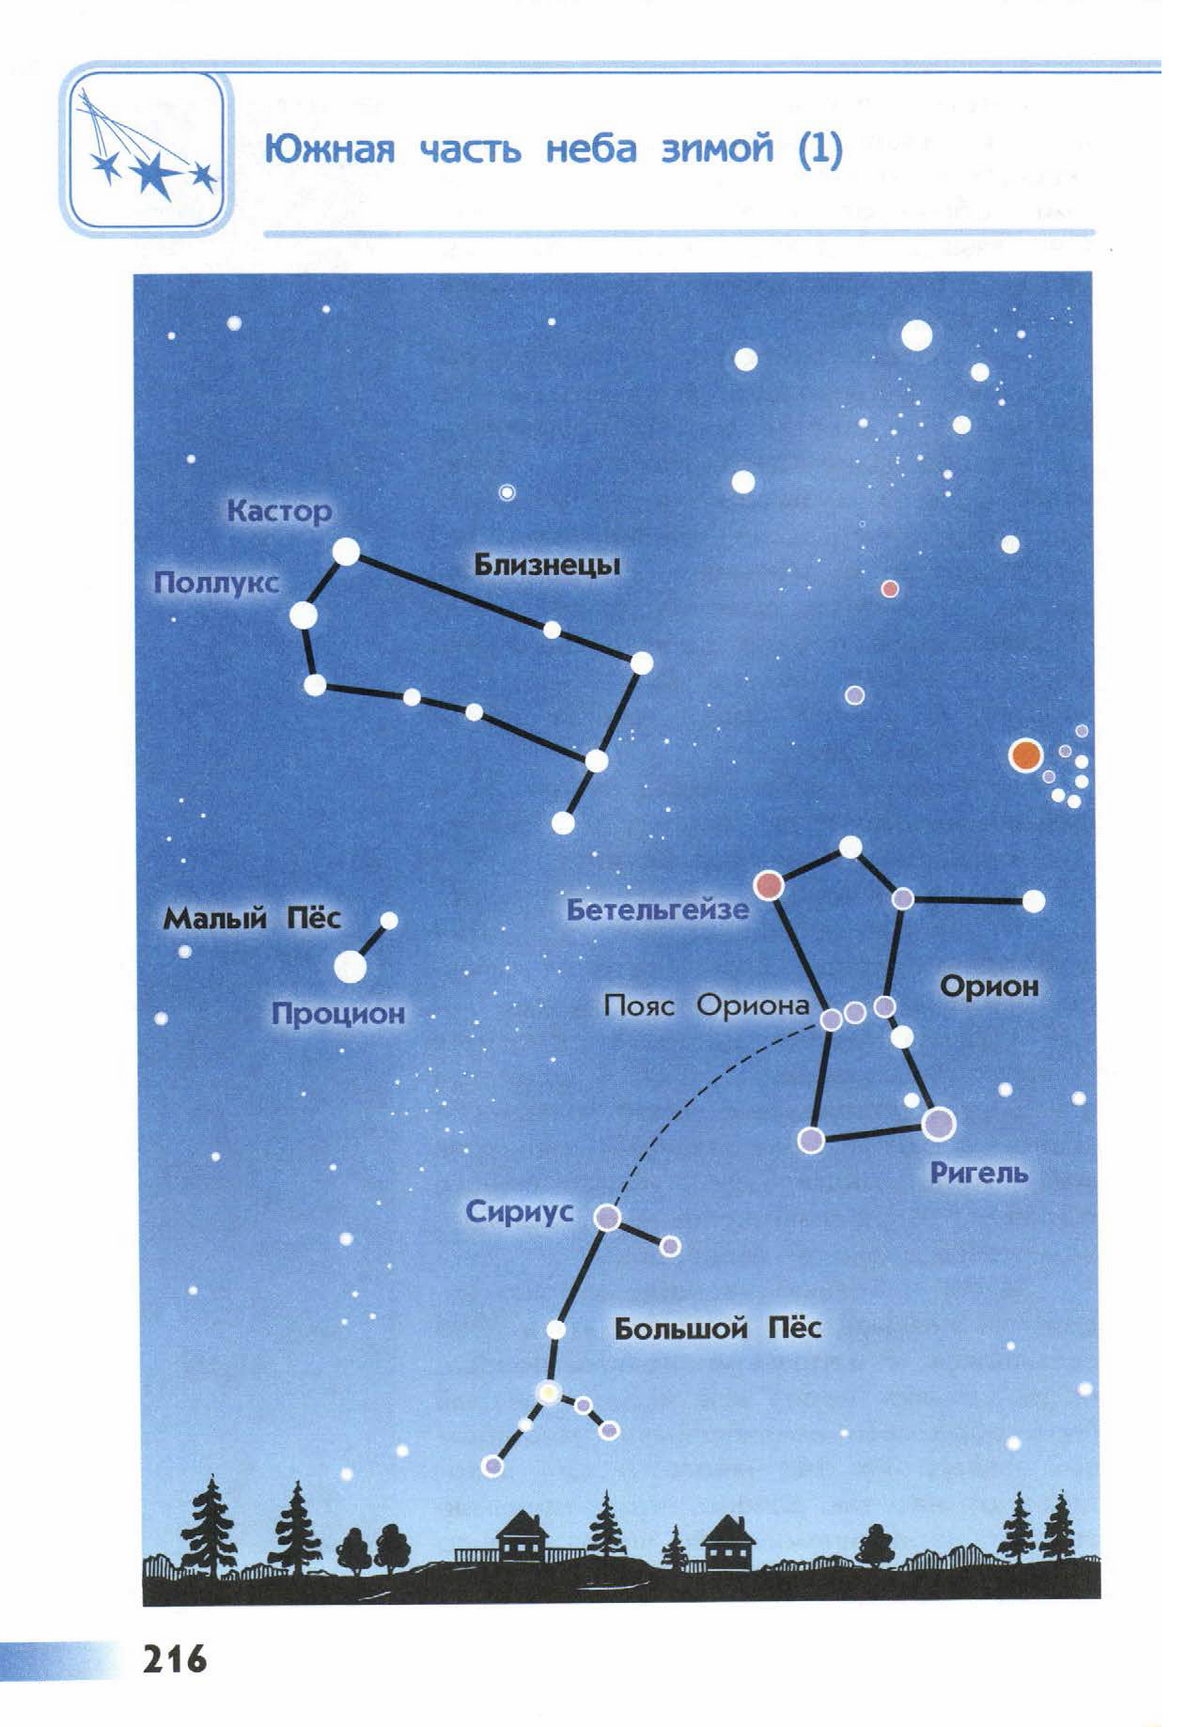 Отзыв земля и небо 4 класс. Созвездие Орион атлас определитель 2 класс. Атлас-определитель от земли до неба 2 созвездия. От земли до неба атлас-определитель 2 класс звезды в созвездии Орион. Атлас-определитель от земли до неба 2 звездное небо Созвездие Орион.